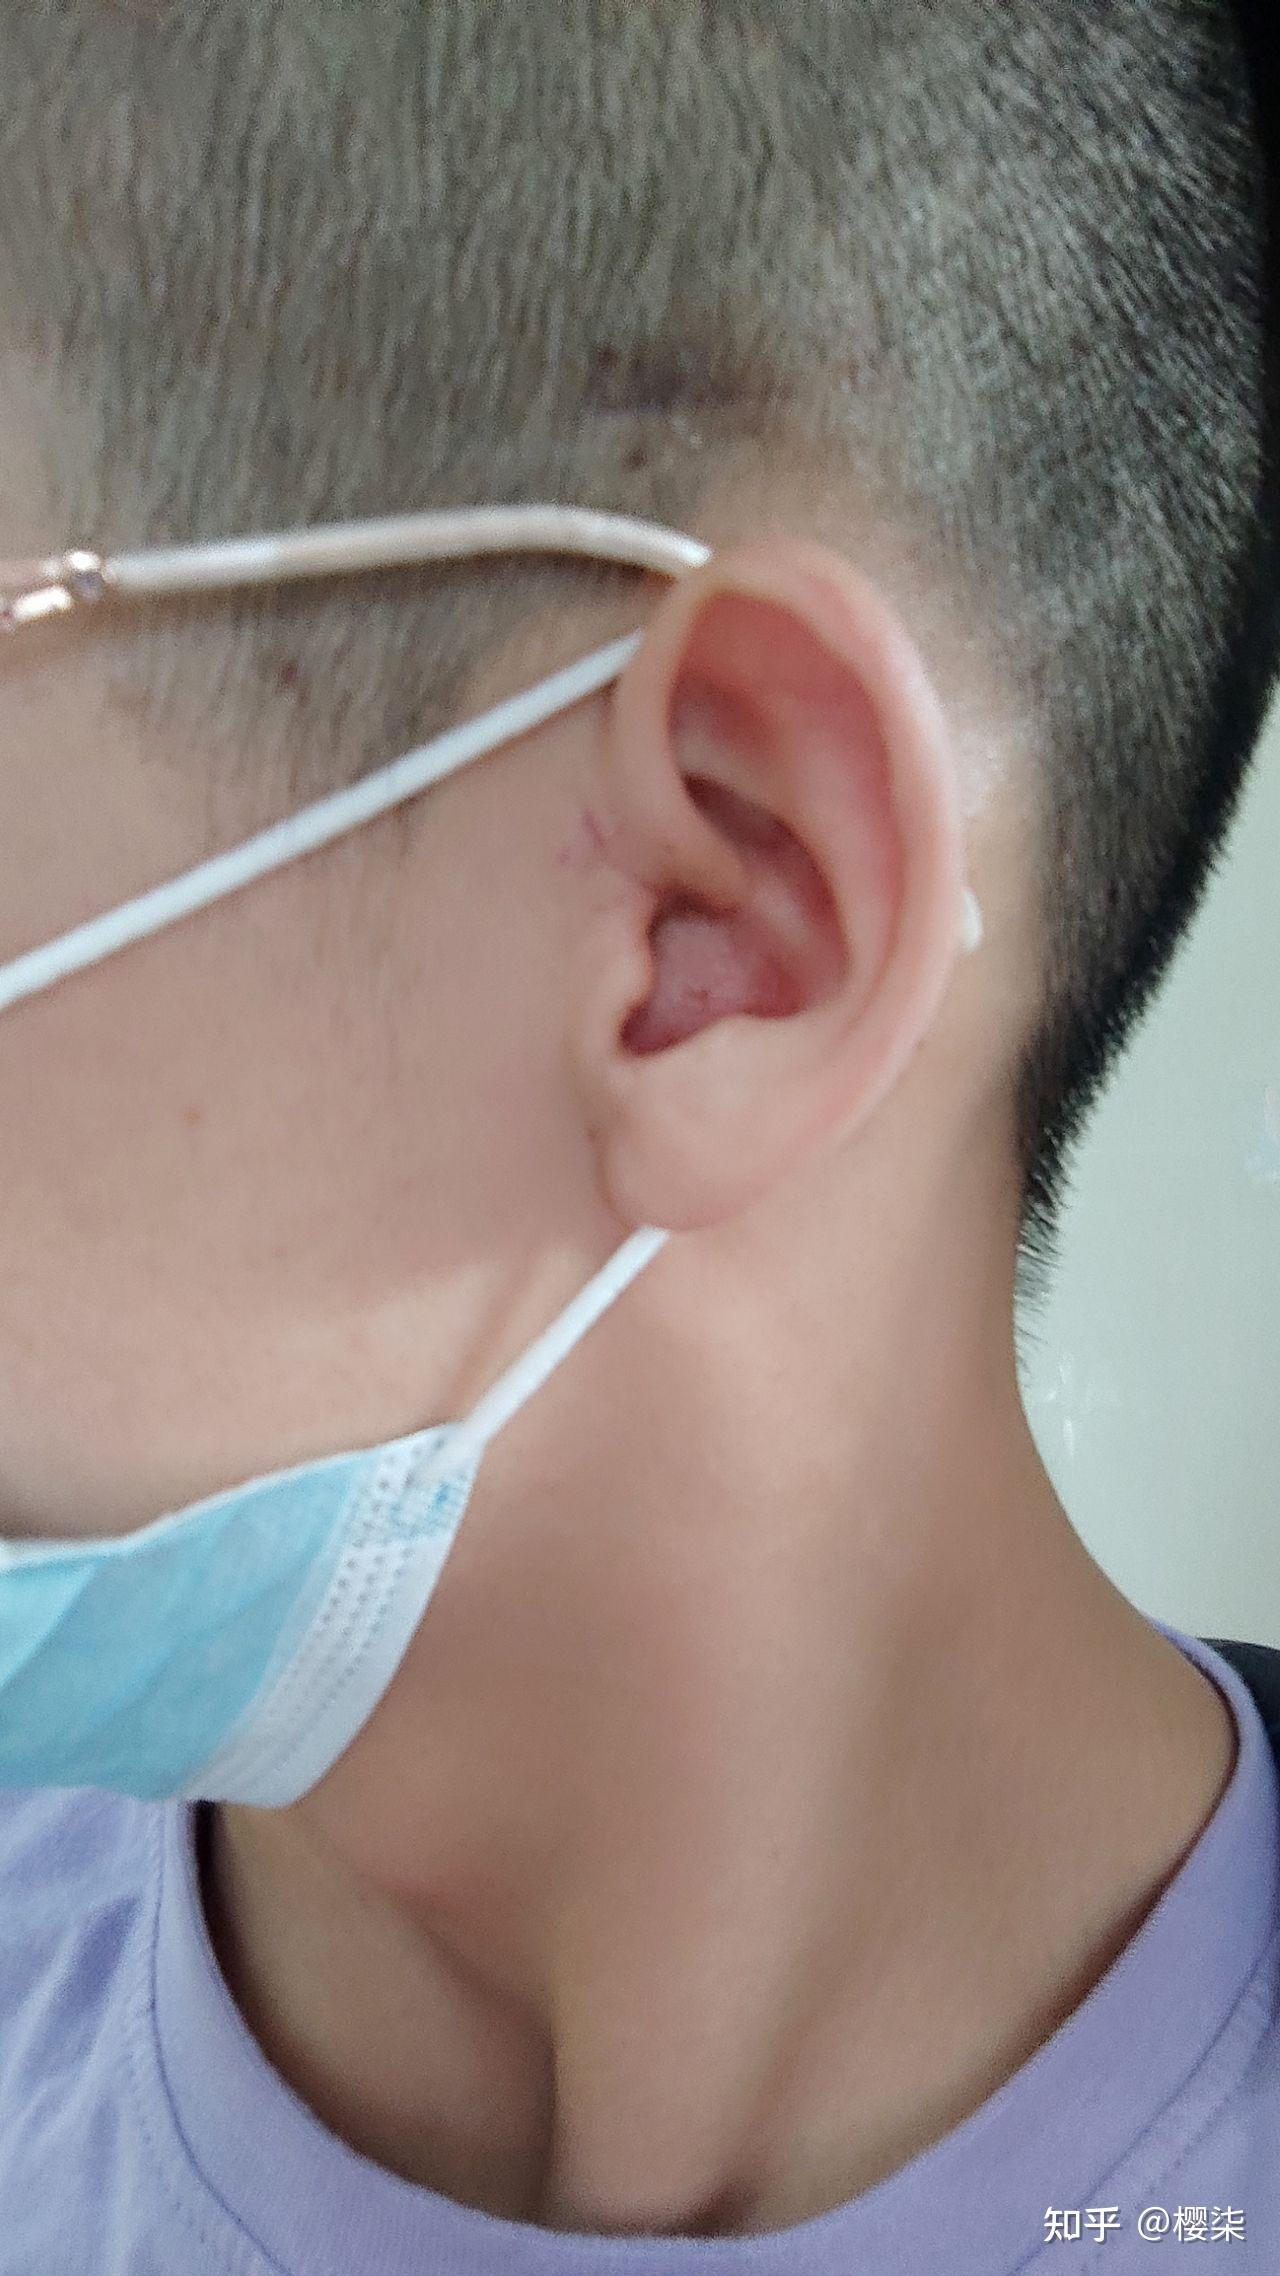 耳膜修补手术经历 